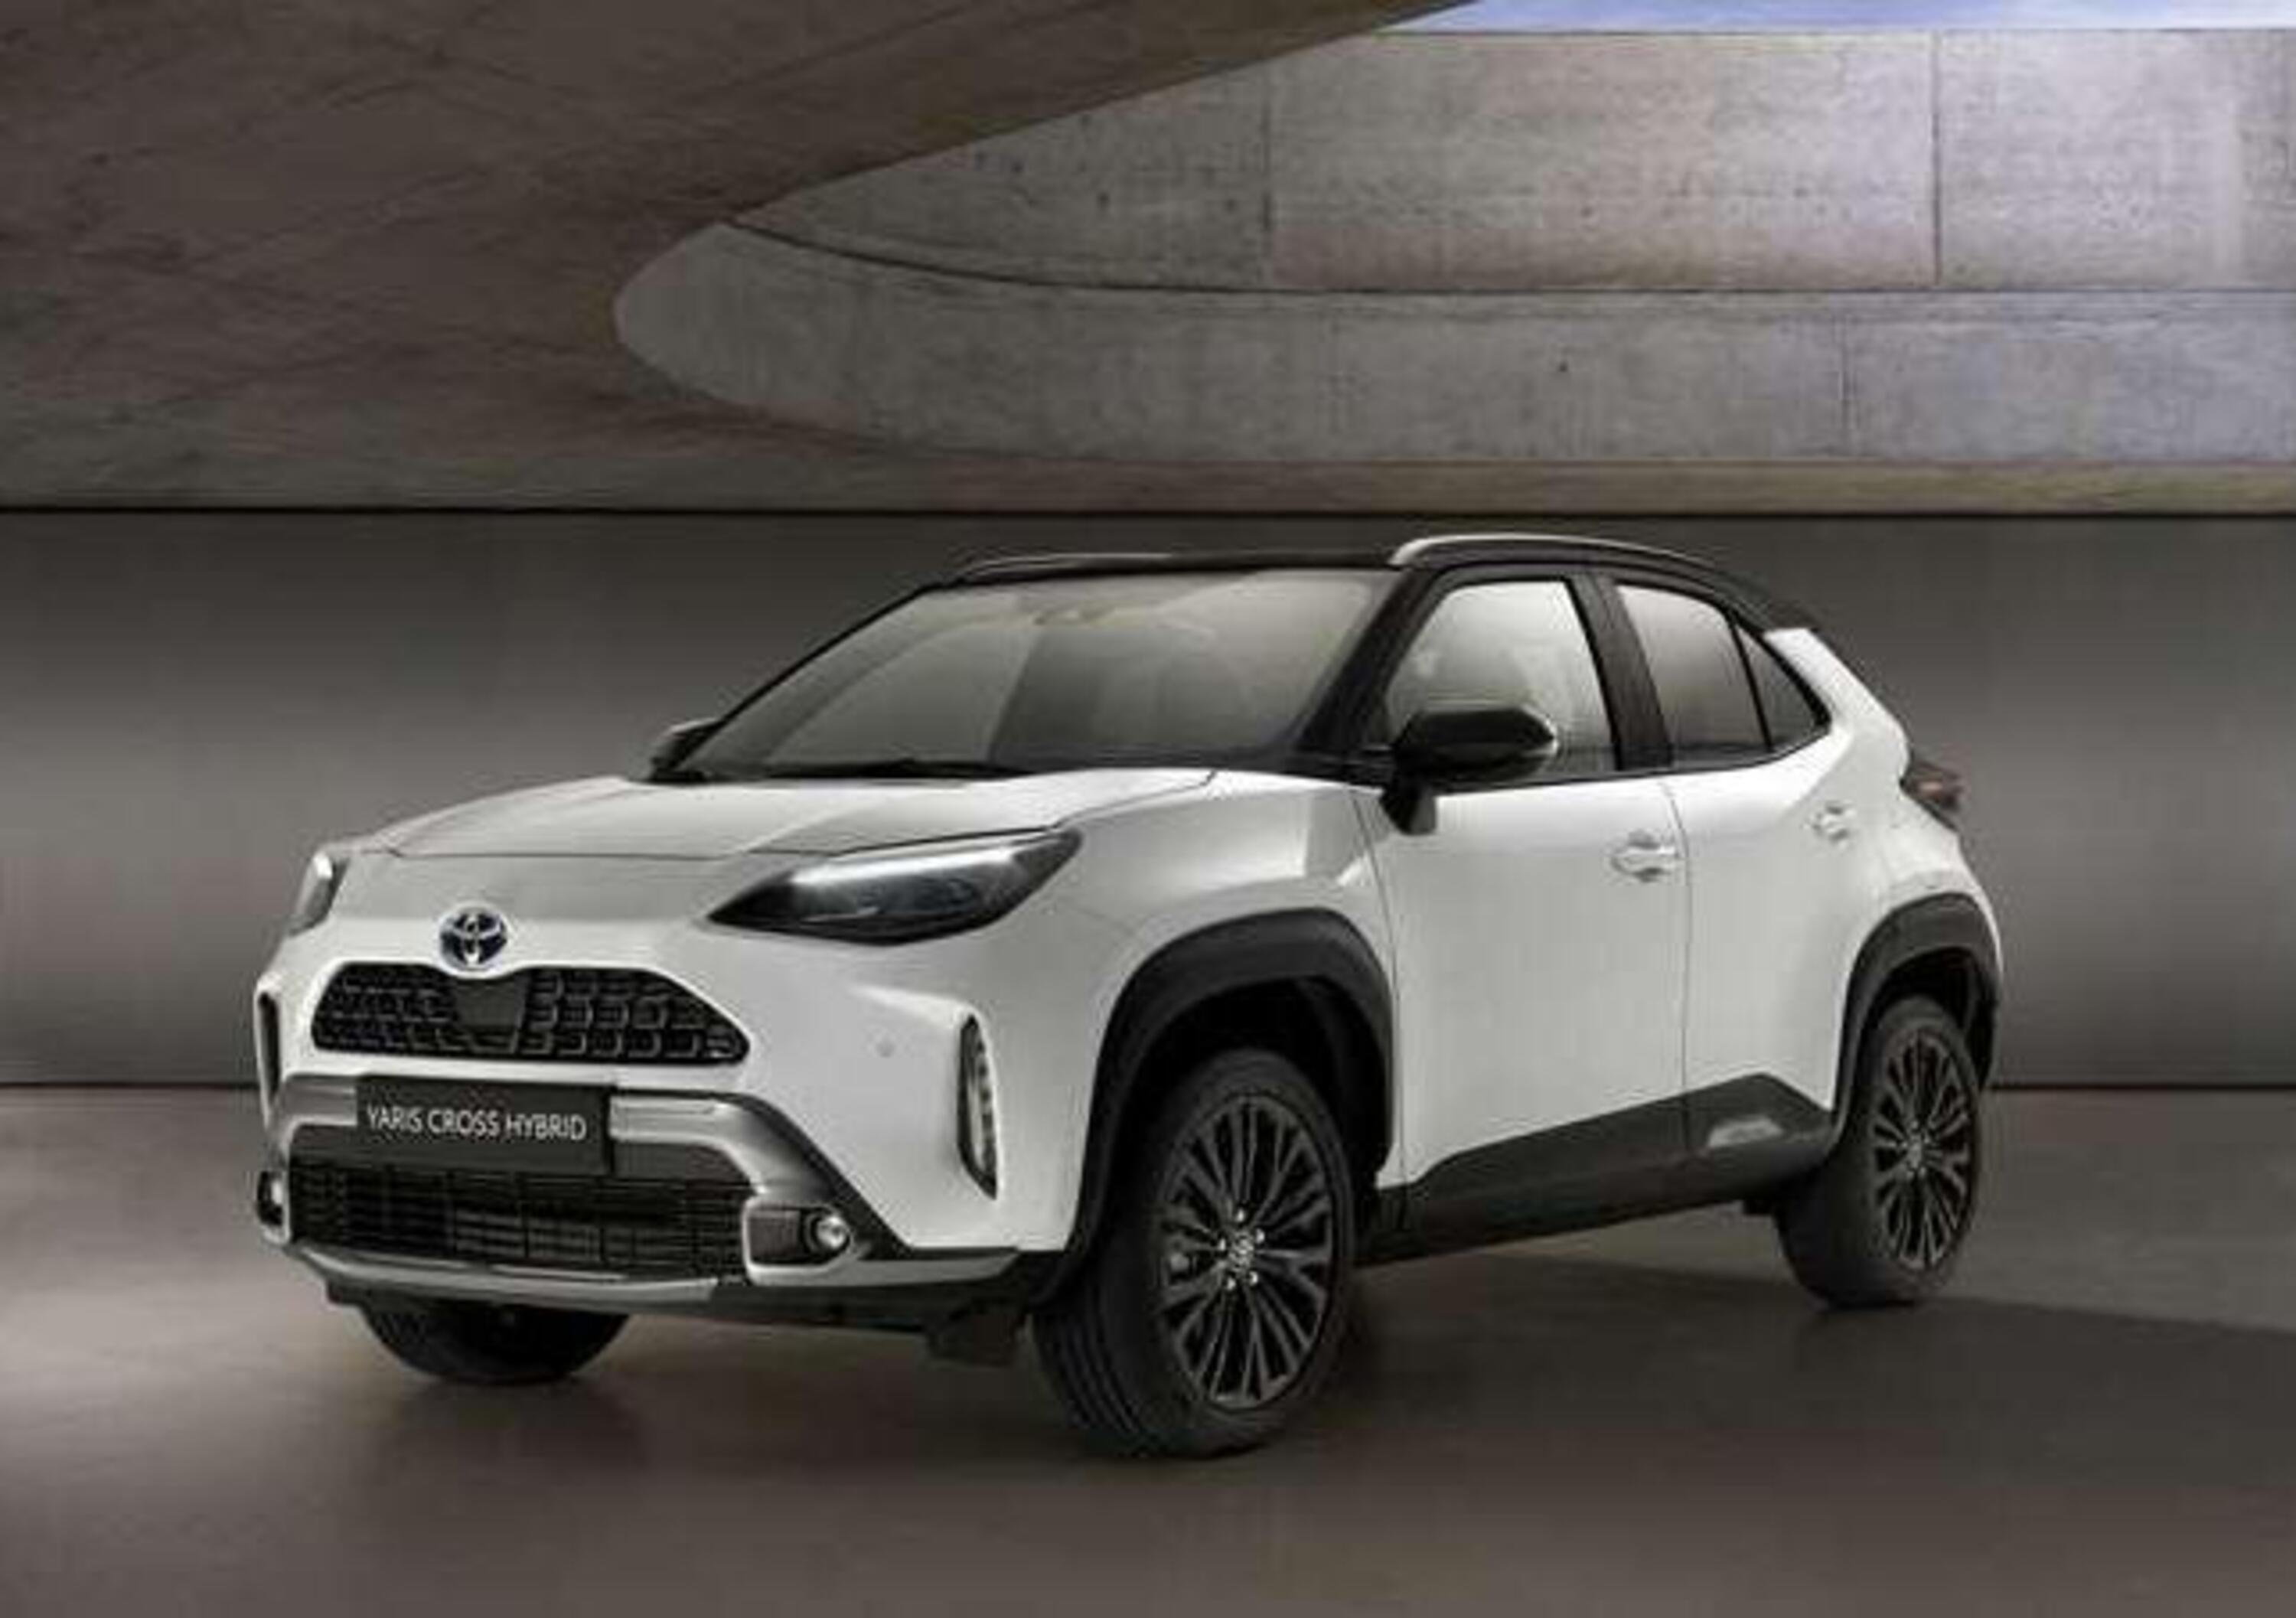 I nuovi allestimenti della Toyota Yaris Cross 2021: anche Limited edition